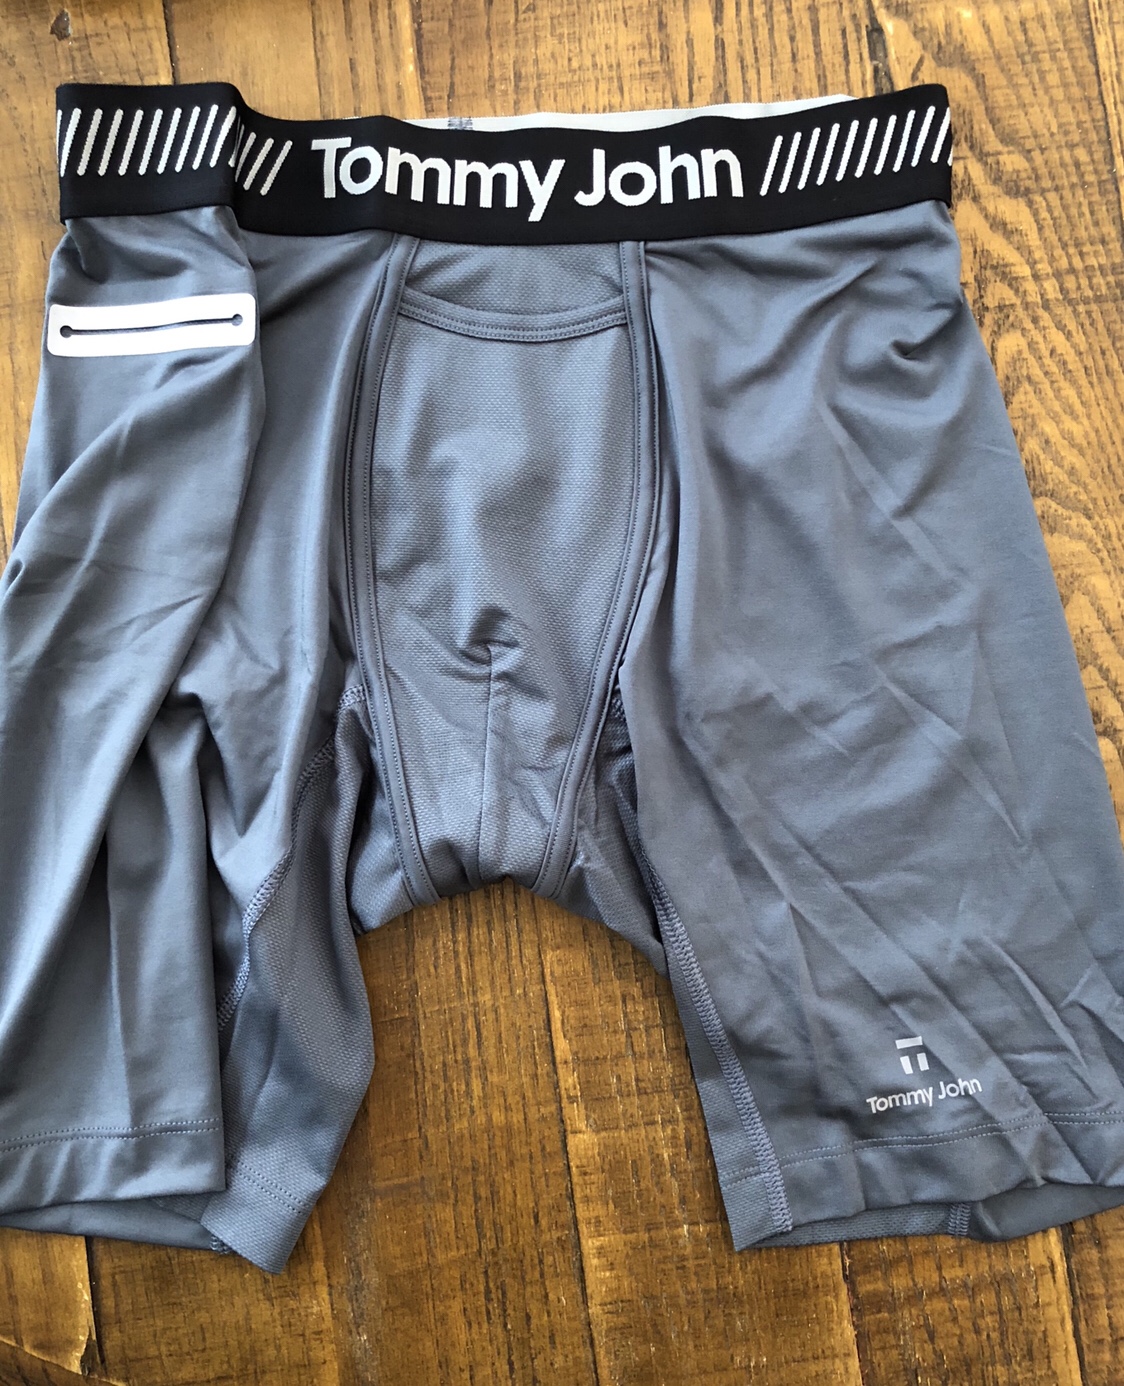 tommy john underwear reviews